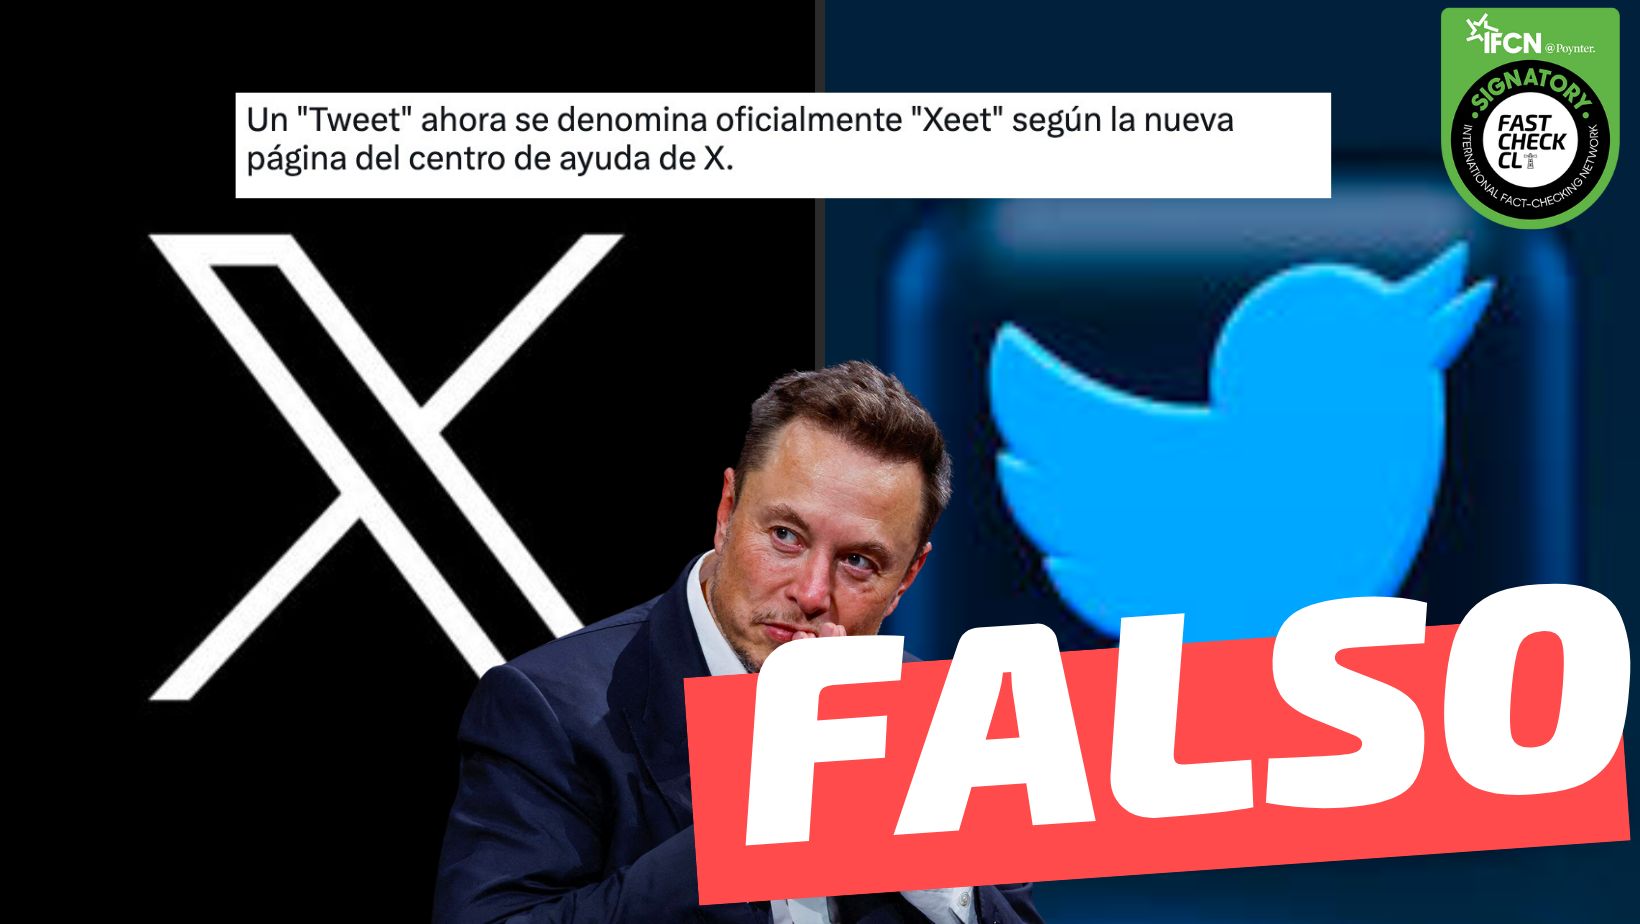 You are currently viewing “La página de ayuda de X.com, antes conocido como Twitter, reveló que un “Tweet” ahora se llamará oficialmente como “Xeet.””: #Falso